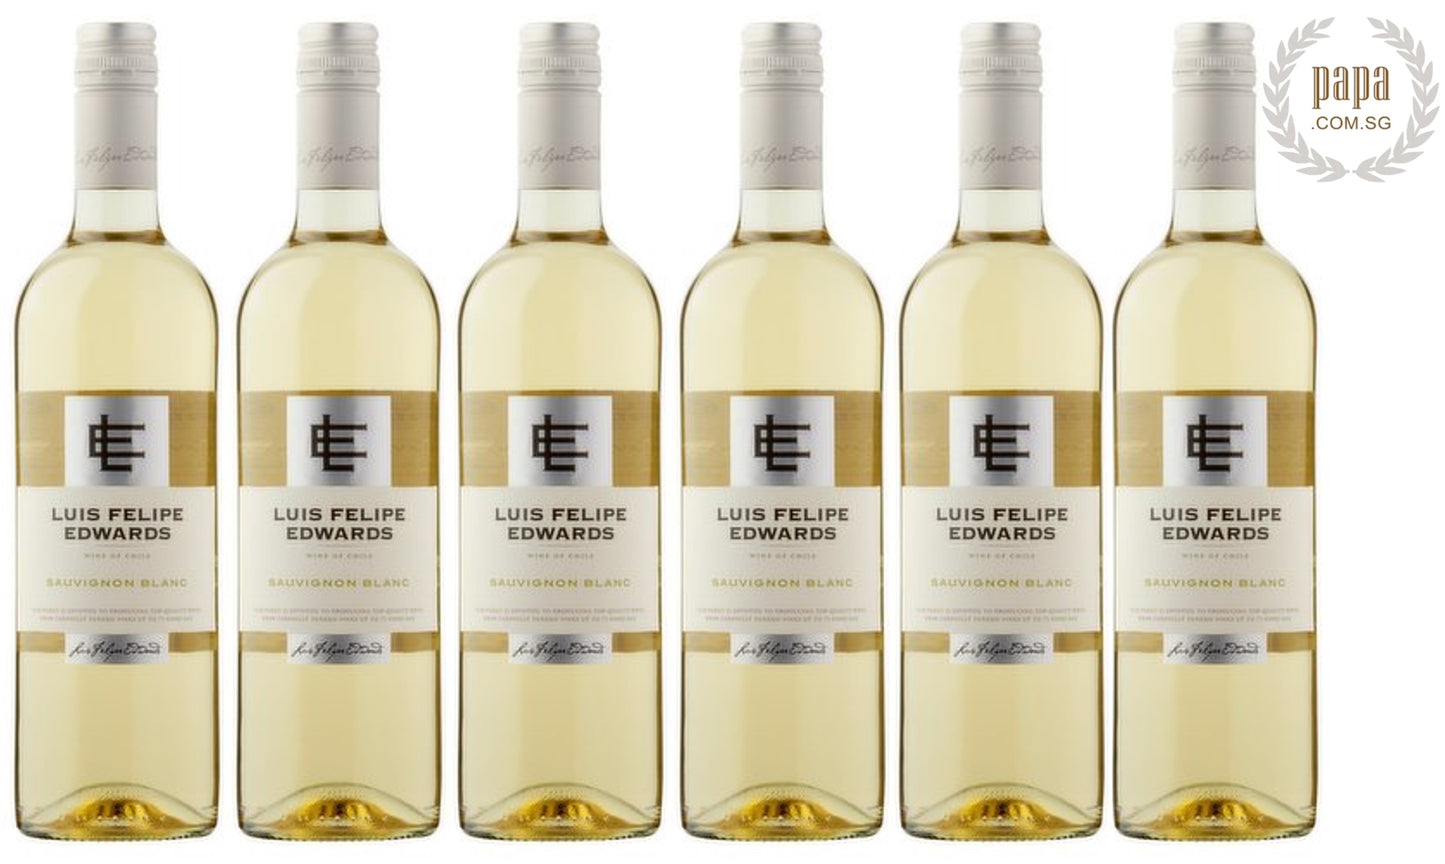 Papa's House Pour Series - Luis Felipe Edwards Classic Sauvignon Blanc 2020 (Sustainable Viticulture)